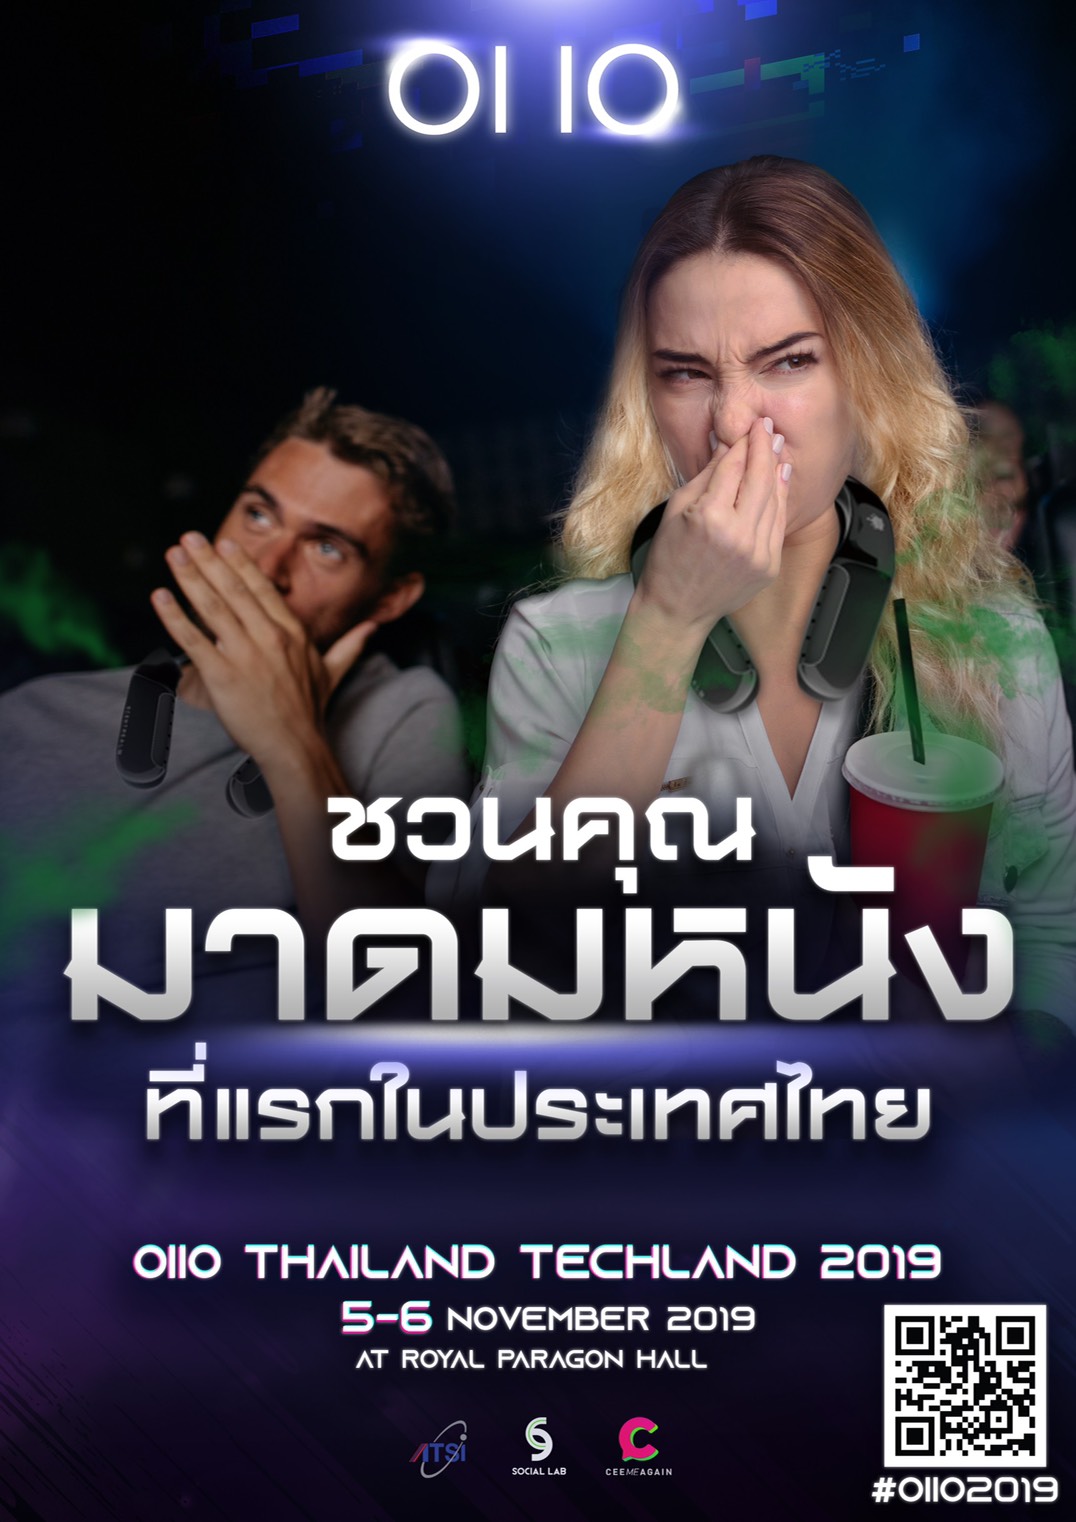 พร้อมหรือยัง? กับปรากฏการณ์ใหม่แห่งวงการไอทีไทยใน OIIO โดย ซี-ฉัตรปวีณ์ Ceemeagain